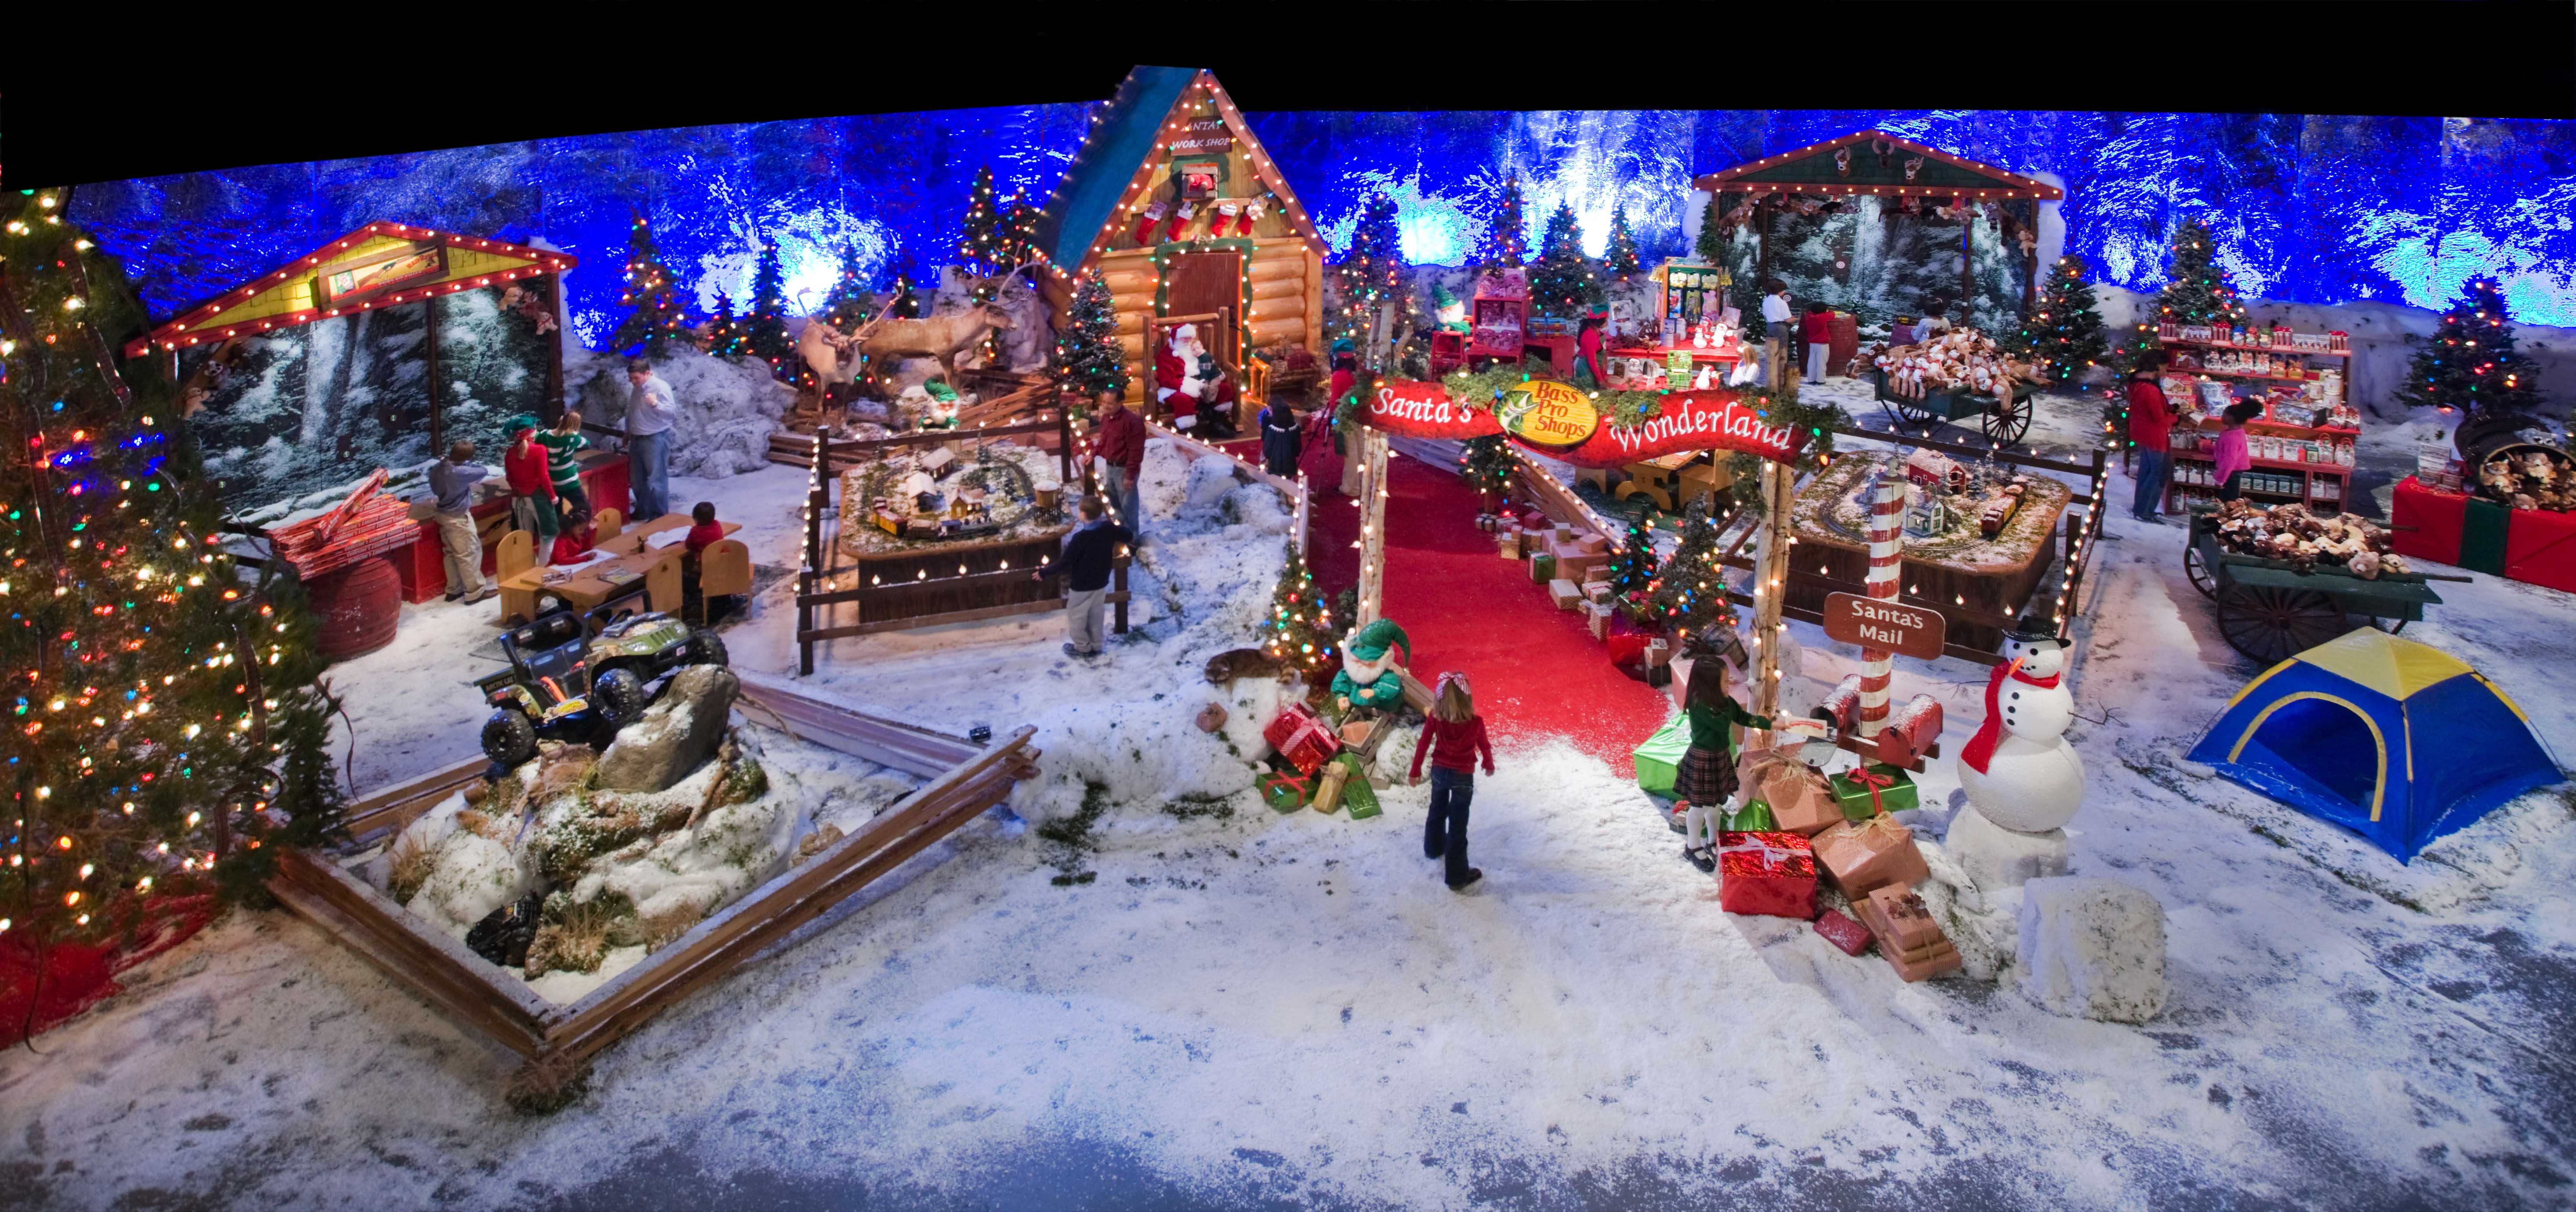 Bass Pro Shops Santa’s Wonderland Brings the Magic of Christmas to Life